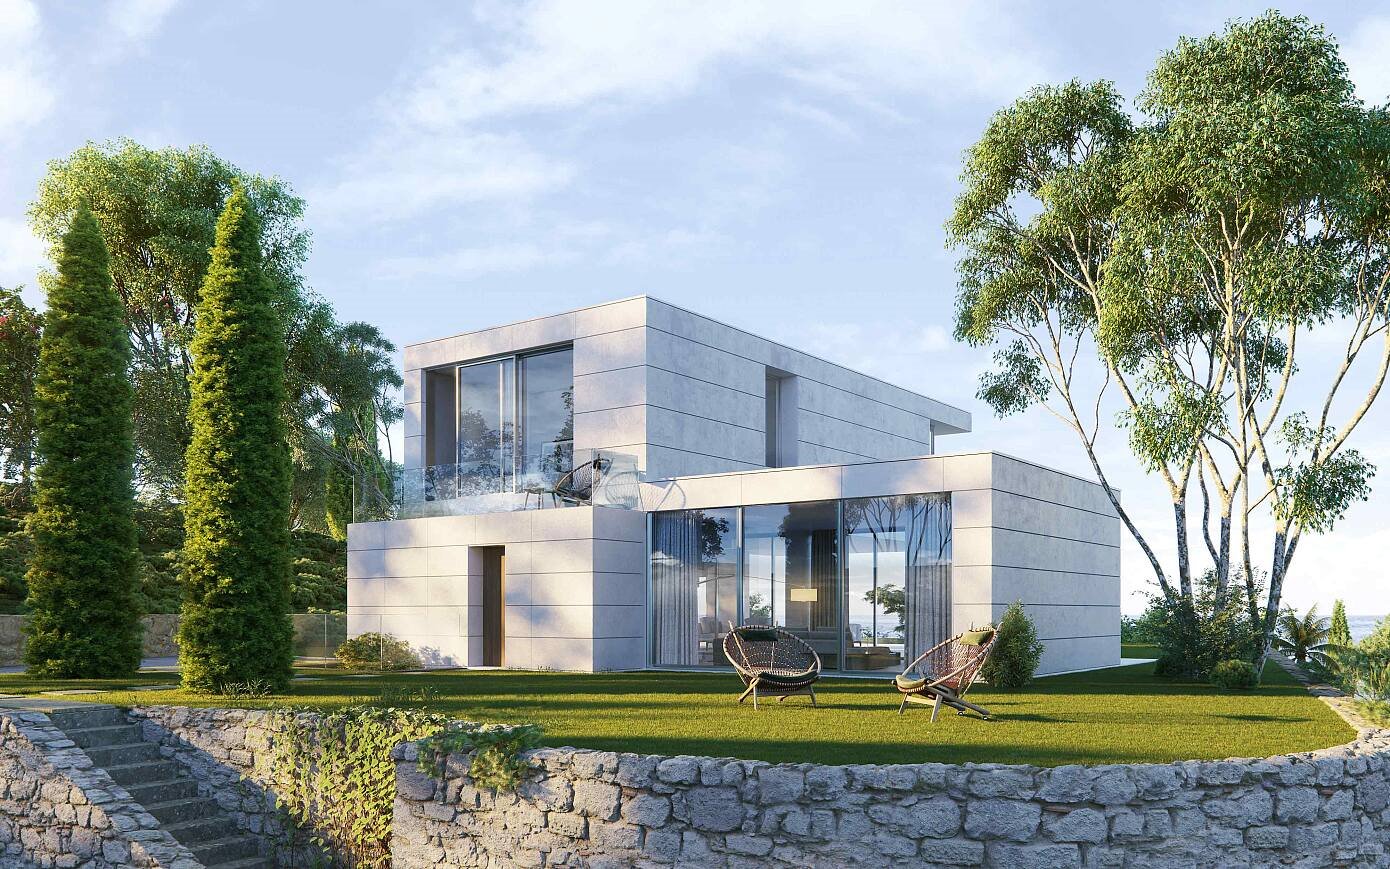 Casa con fachada blanca moderna en Italia rodeada de arboles